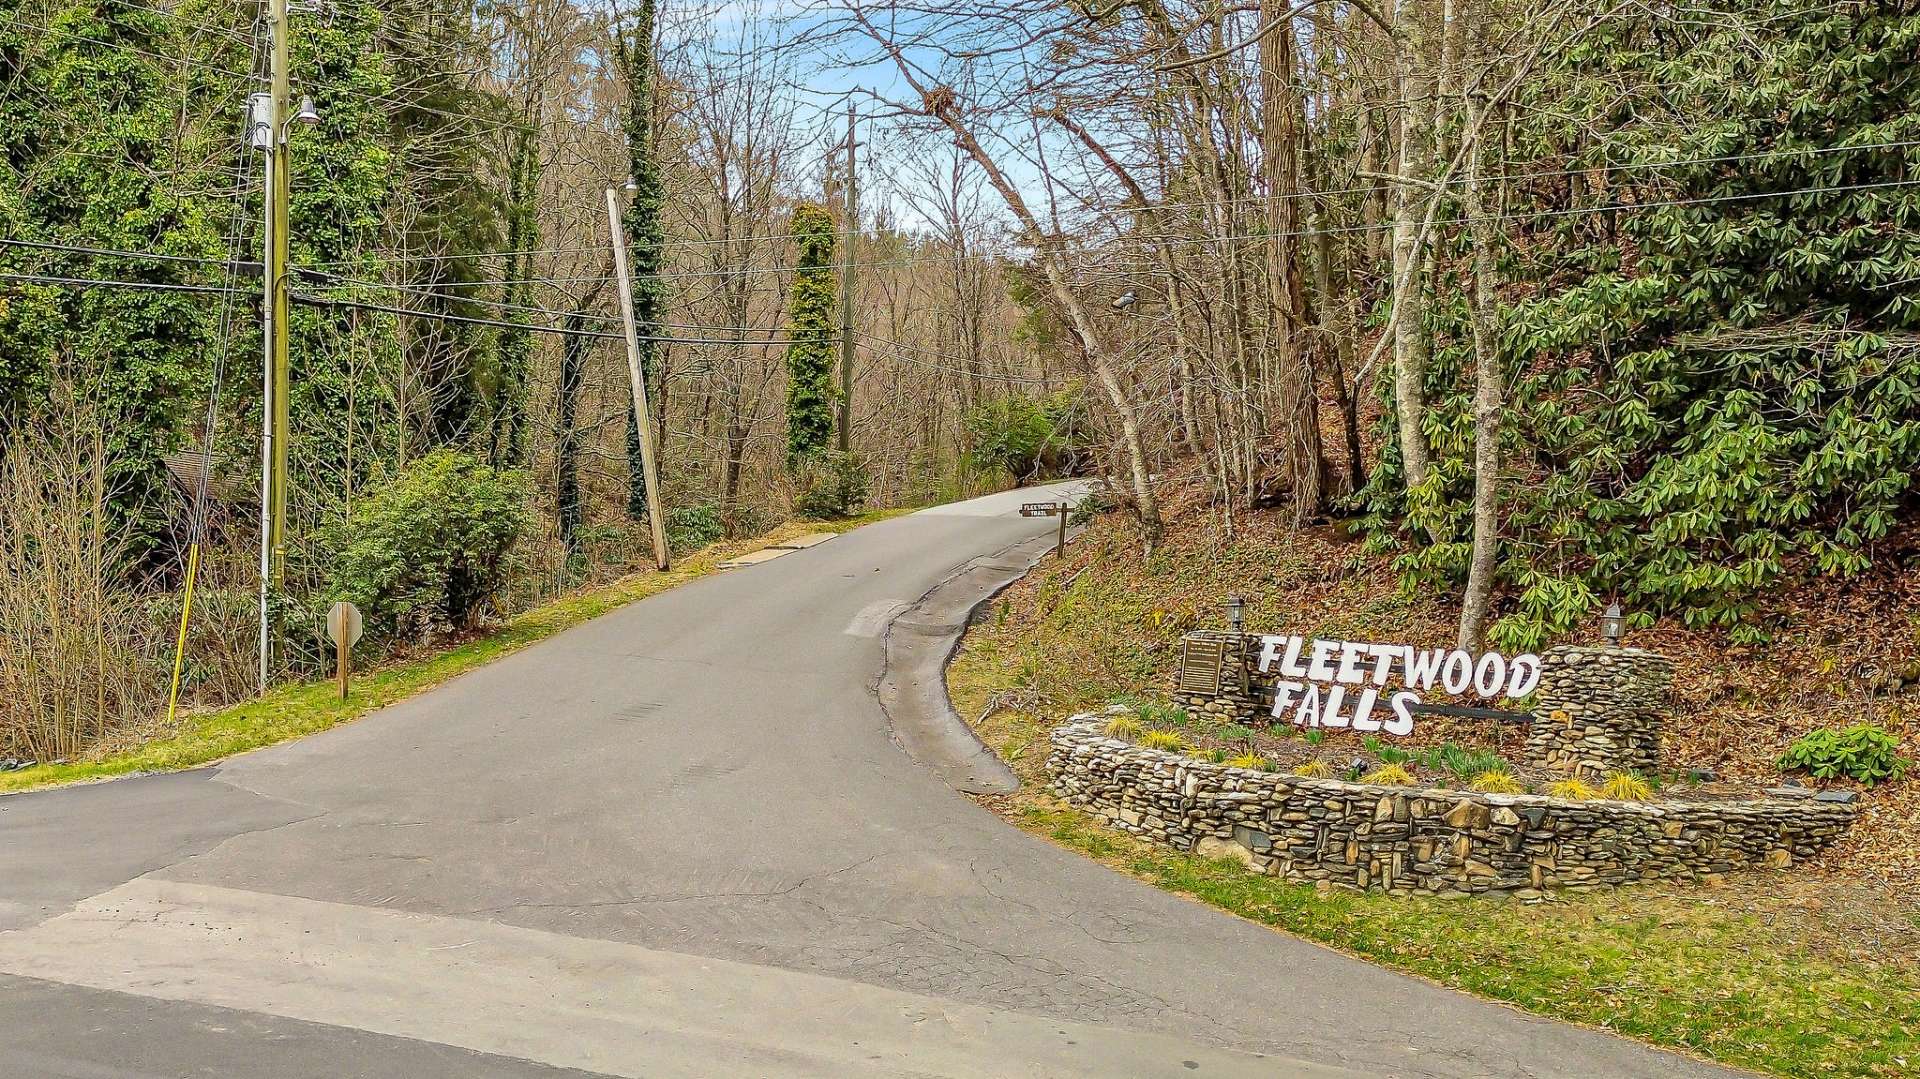 Fleetwood Falls entrance